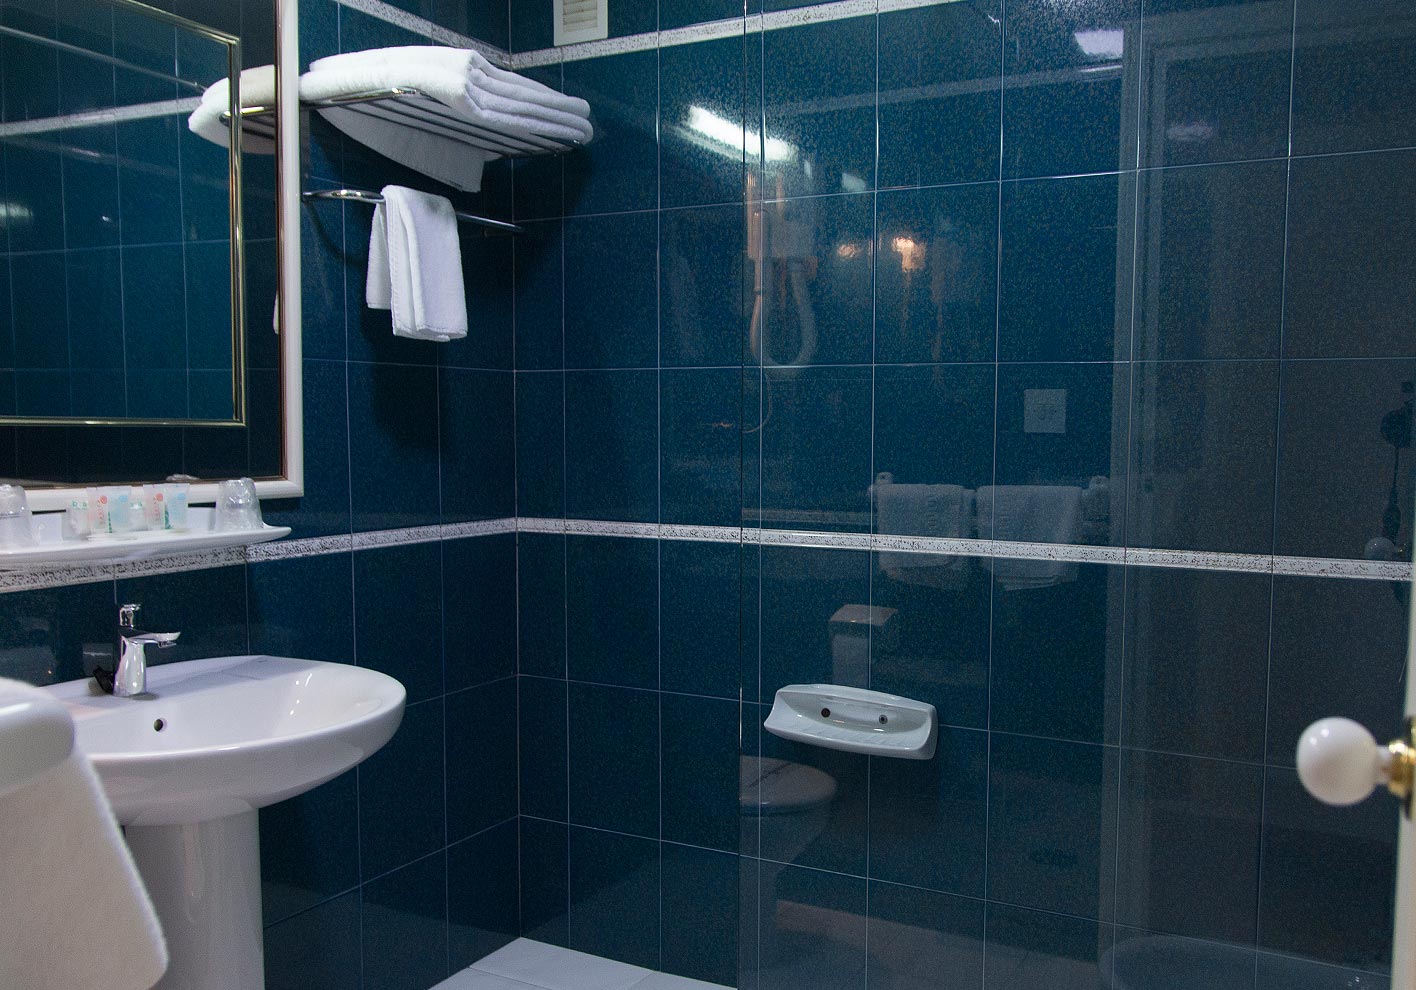 Sanitary facilities at the Terraza Carmona Restaurant Hotel in Vera, Almeria